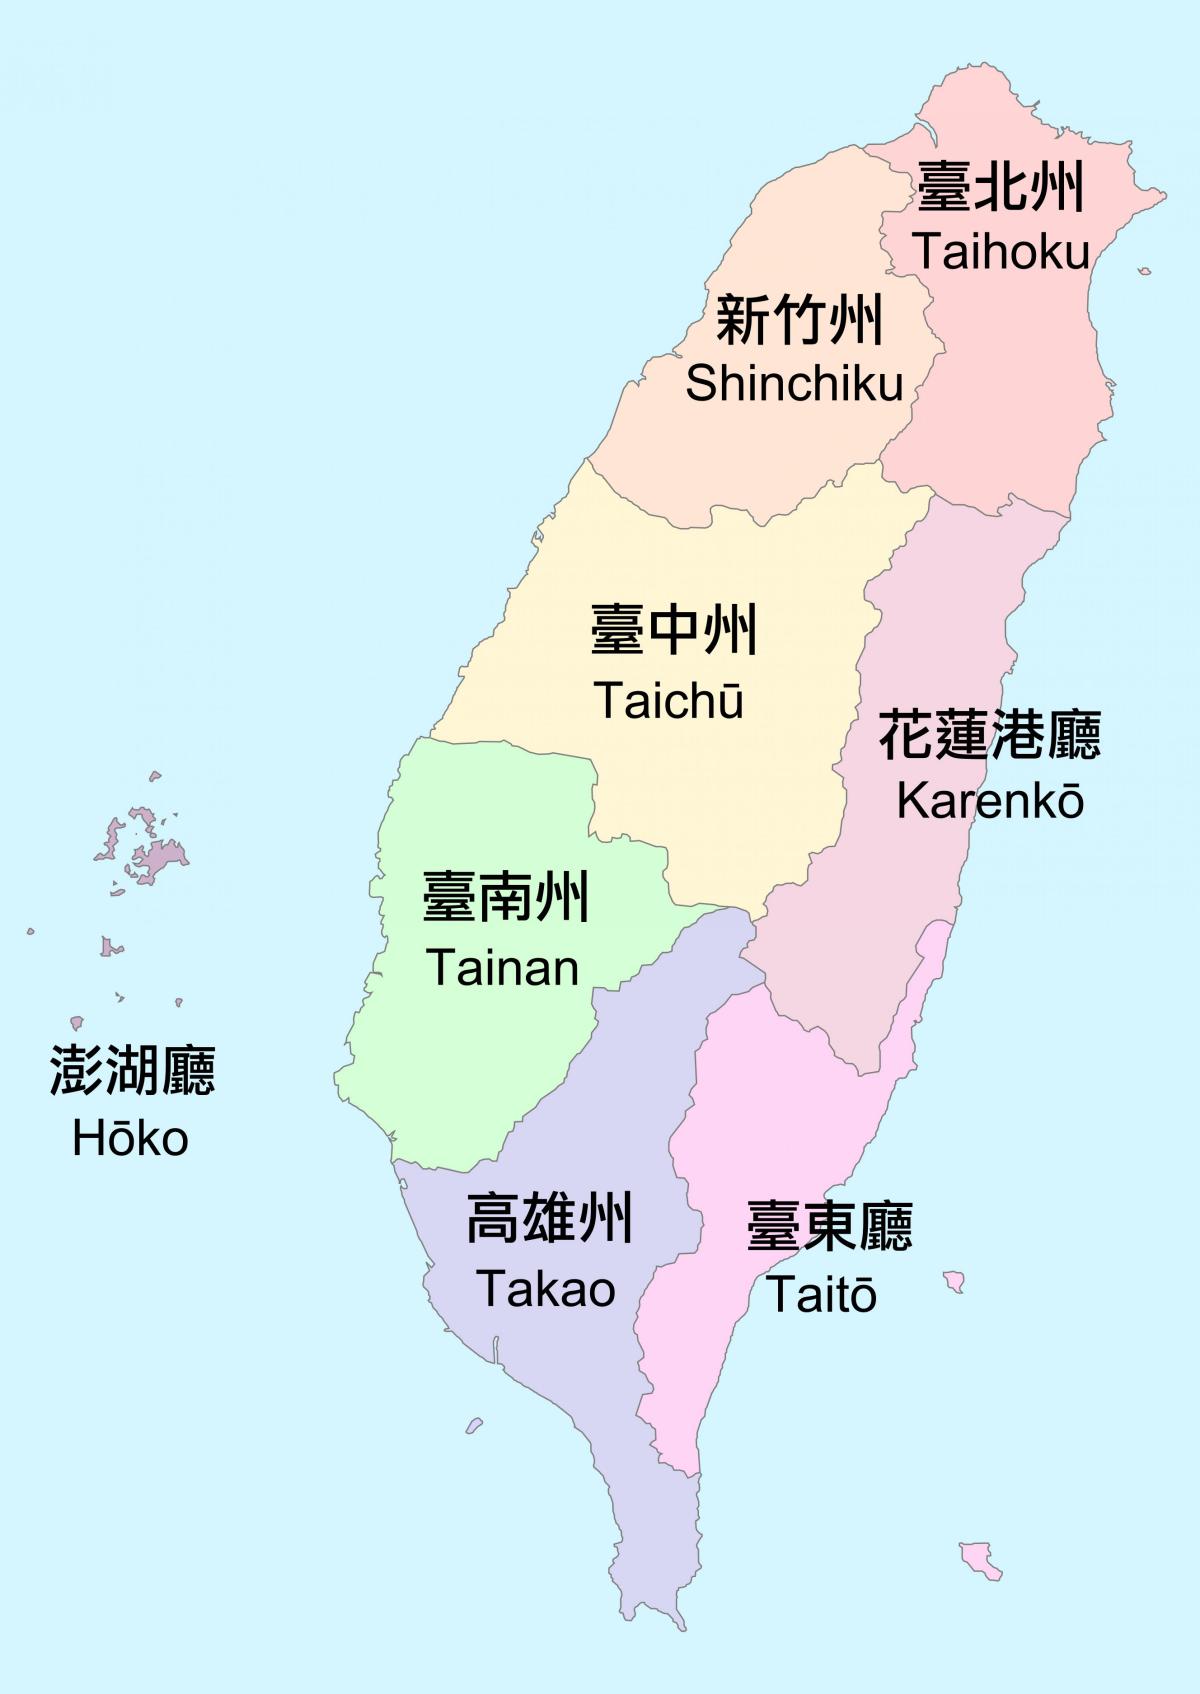 Mappa delle aree di Taiwan